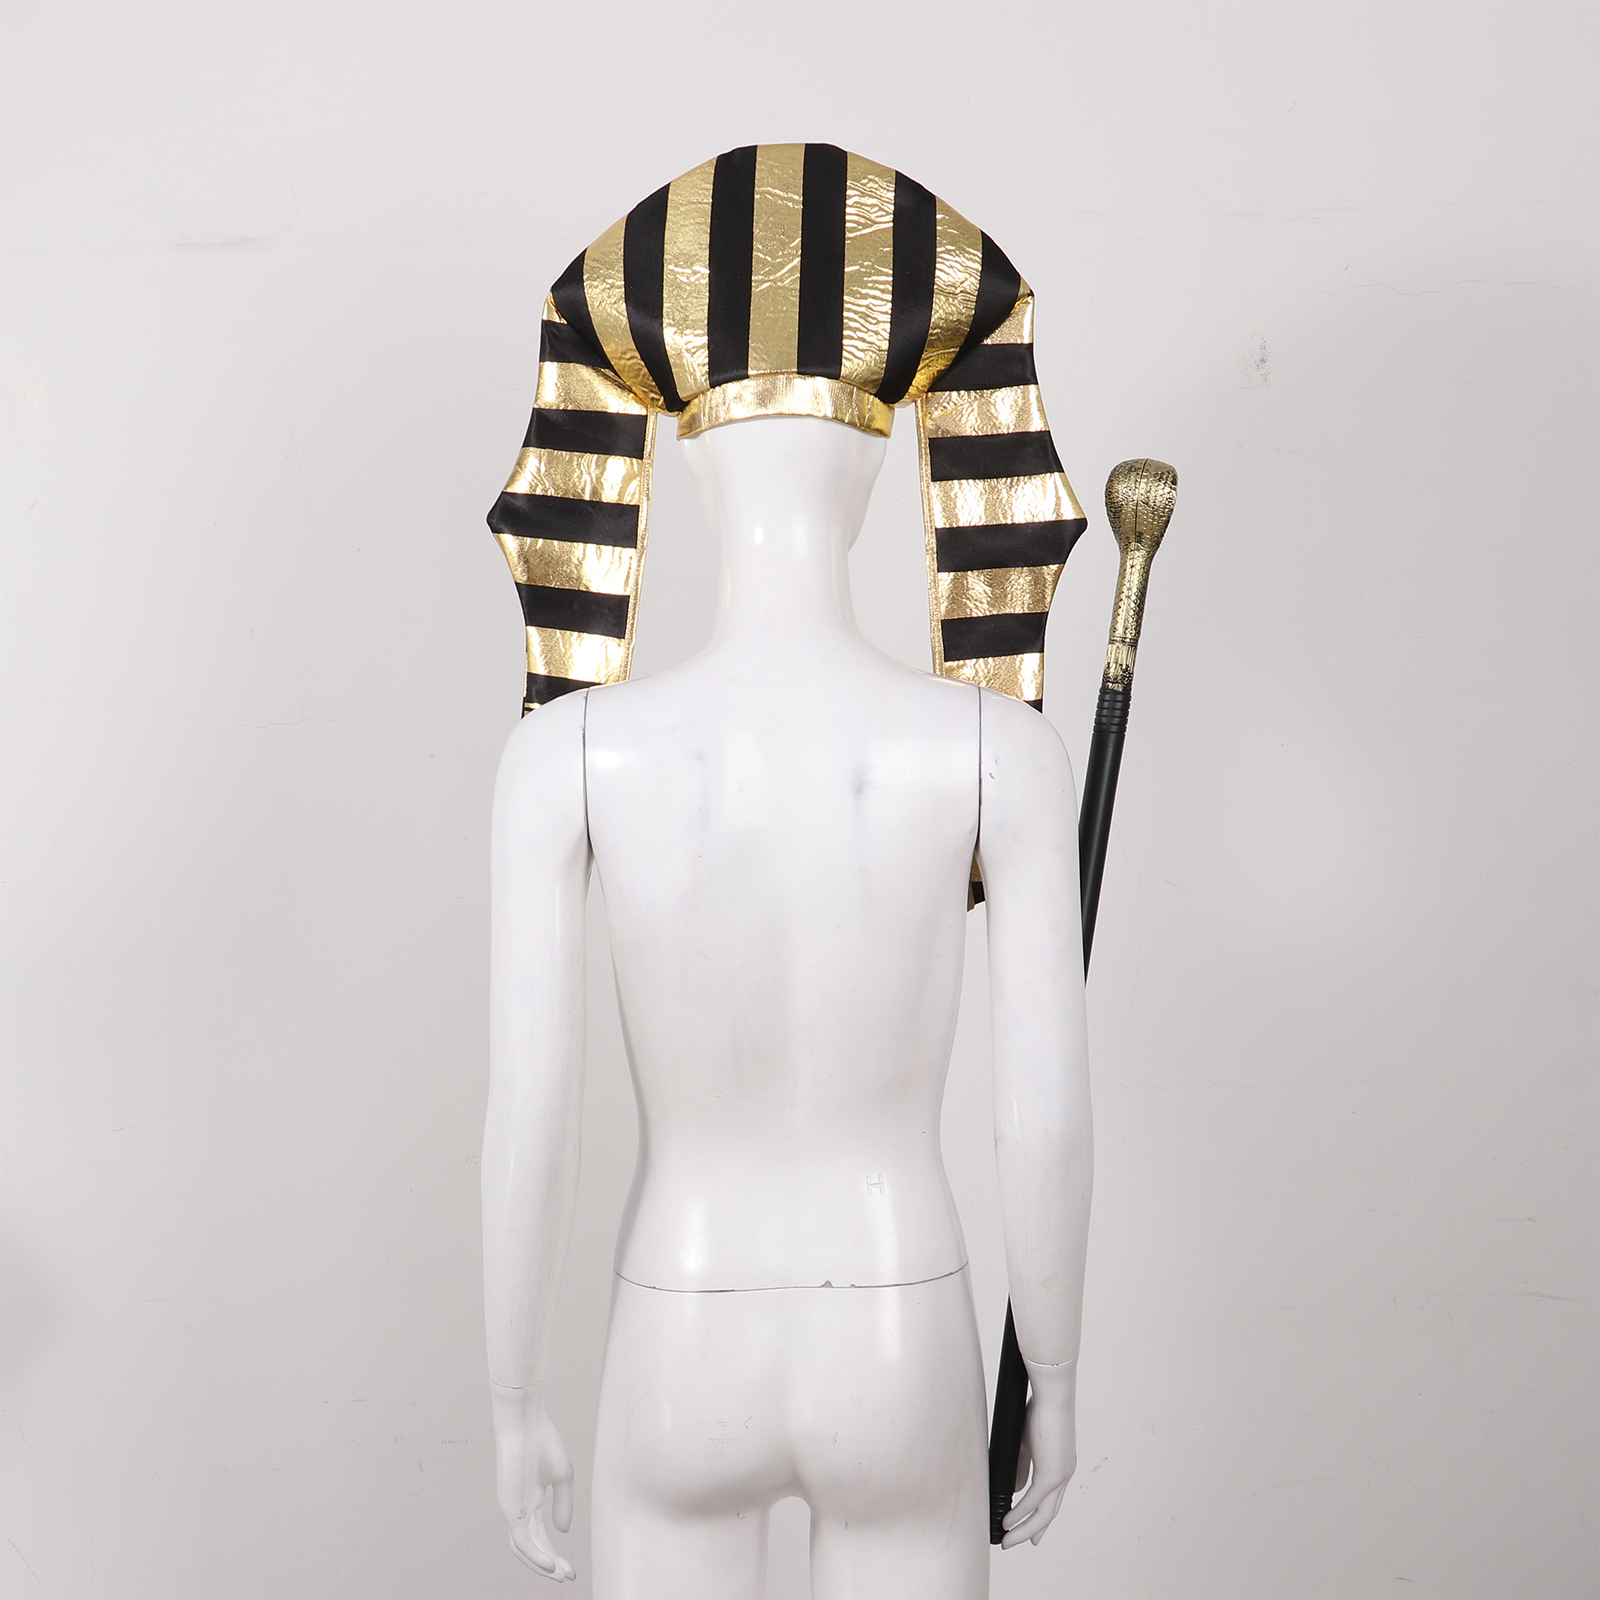 Männer Frauen alte ägyptische Pharao Cosplay Kostüm Accessoire Halloween Gold -Trims Cleopatra Antike römische Königin Party Requisiten